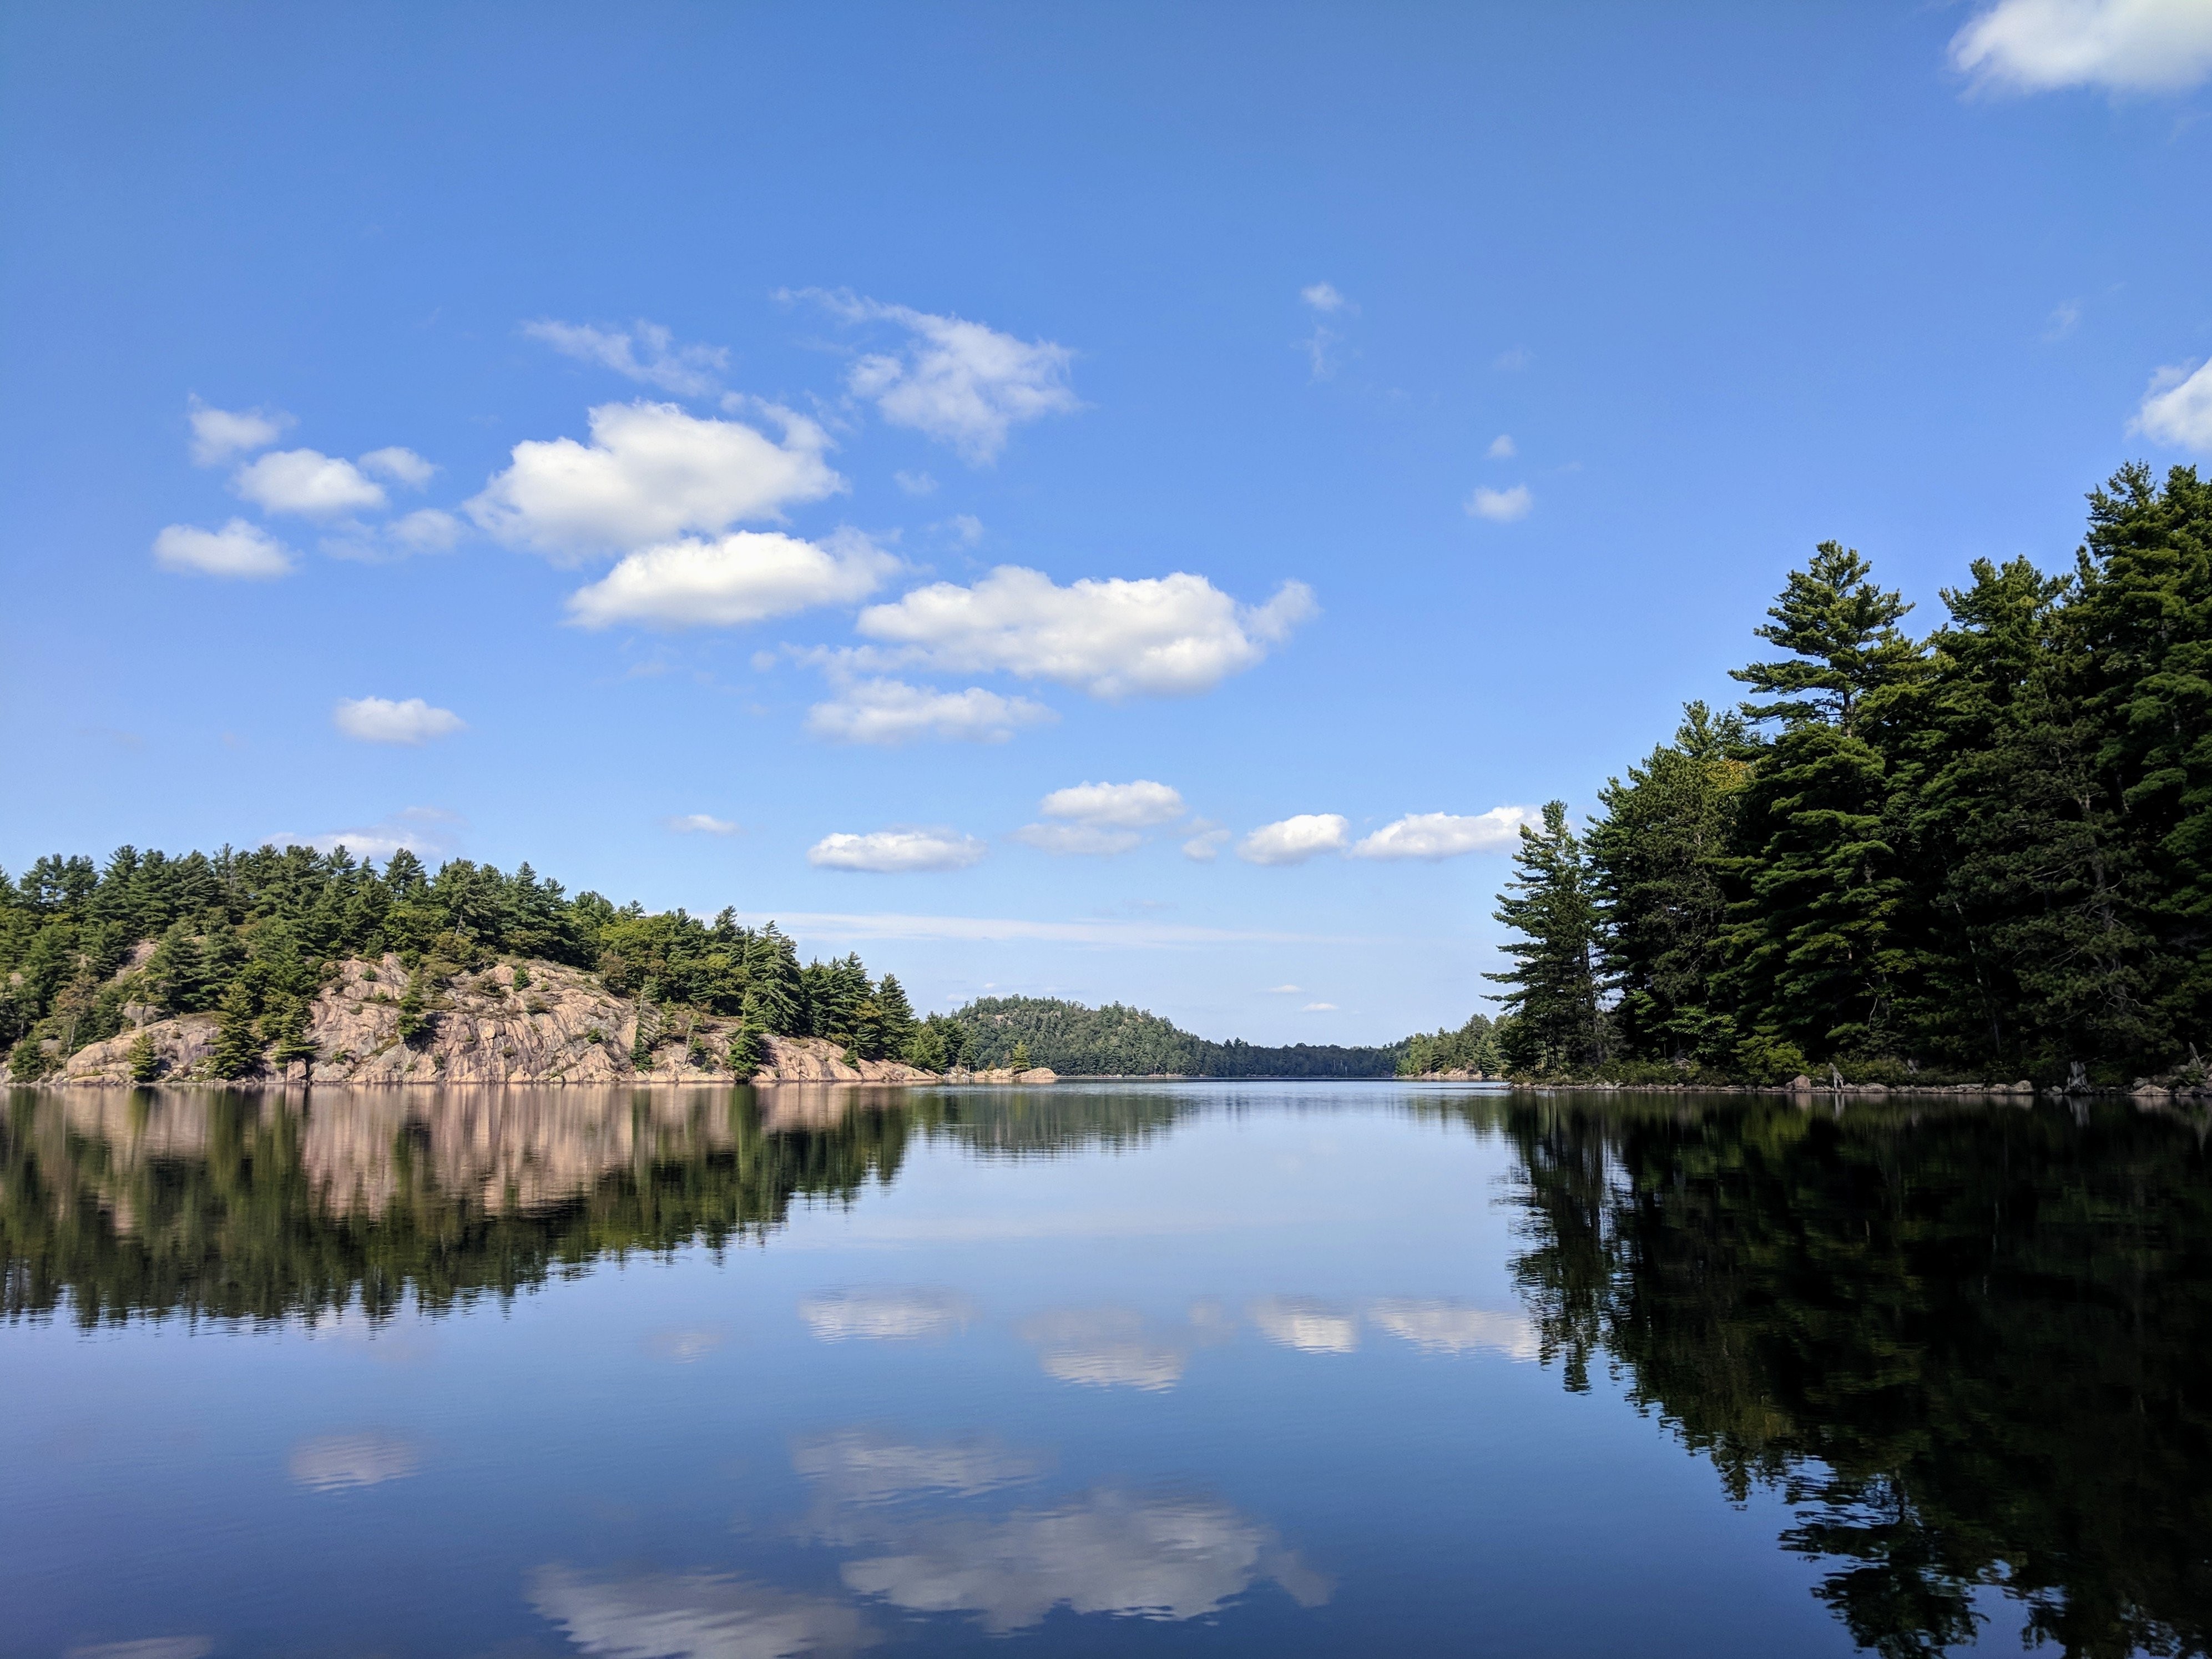 Rocas y árboles reflejados en el lago tranquilo Foto